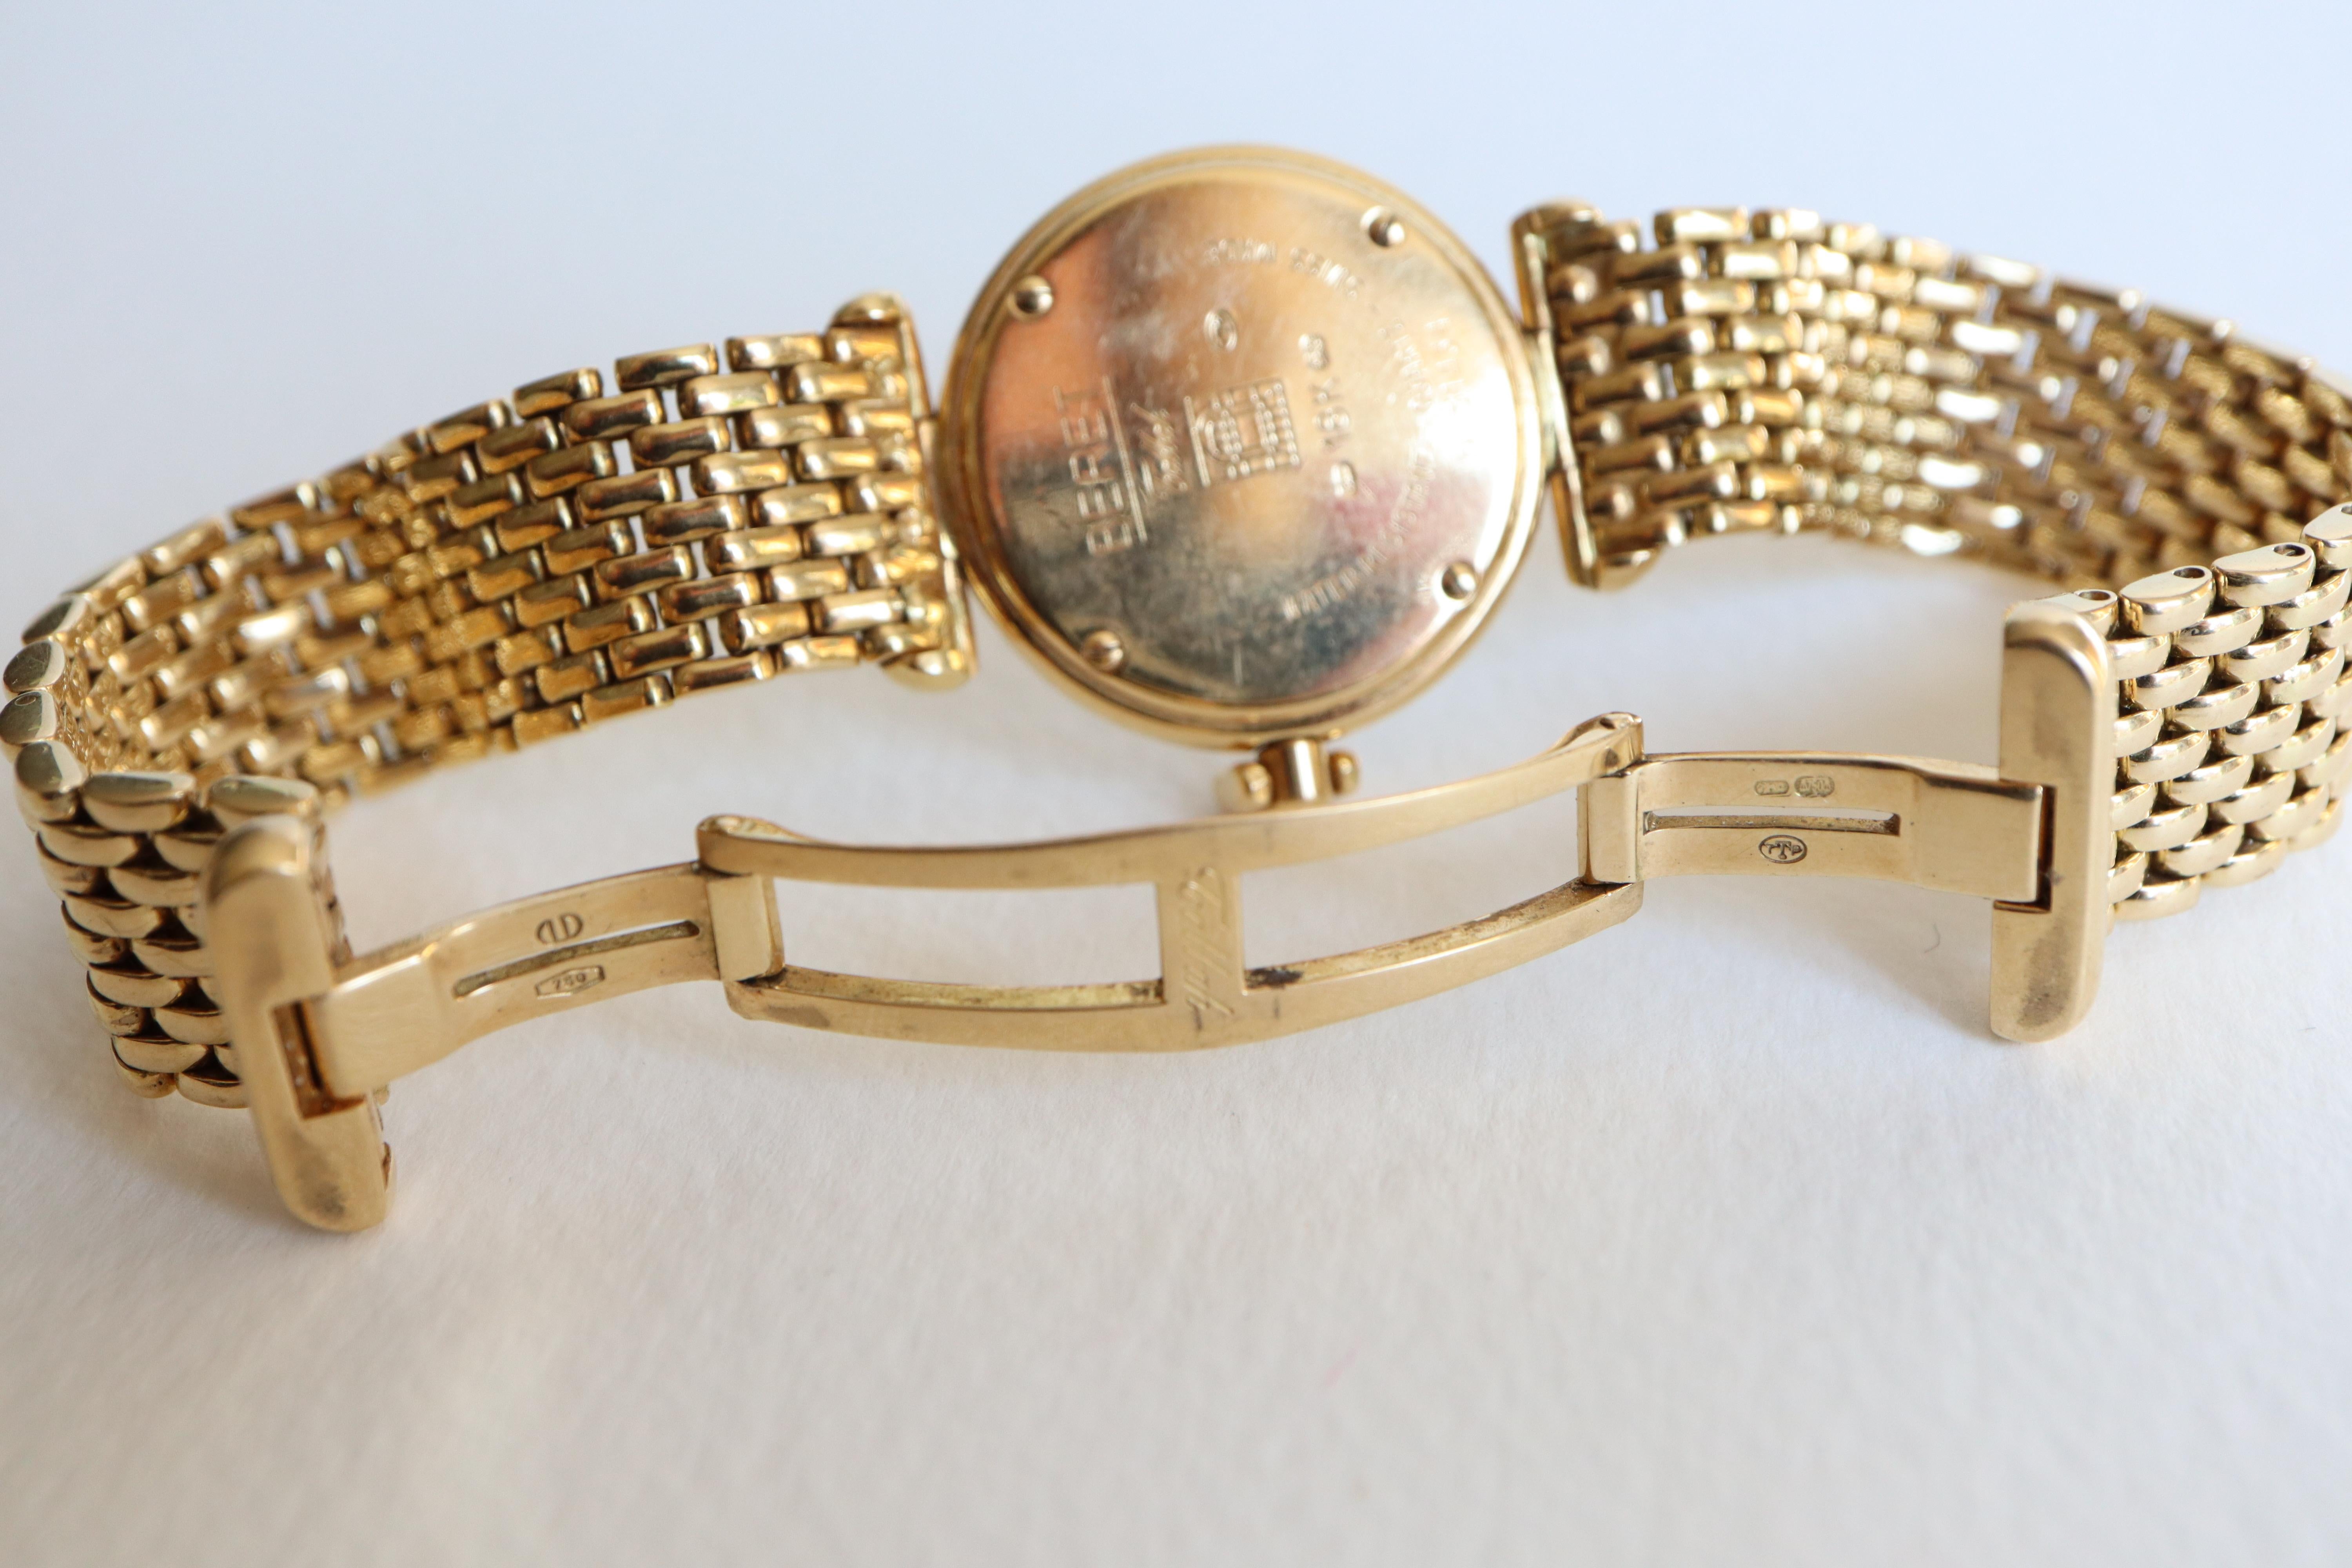 Montre bracelet pour femme en OR 18K et diamants de Tabbah, modèle Beret.
Bracelet articulé en or avec de petits maillons.  138 diamants pour environ 1,5 à 2 carats
Longueur : 17cm
Longueur du cadran : 3,3 cm Diamètre de la lunette : 2,5 cm 
Poids